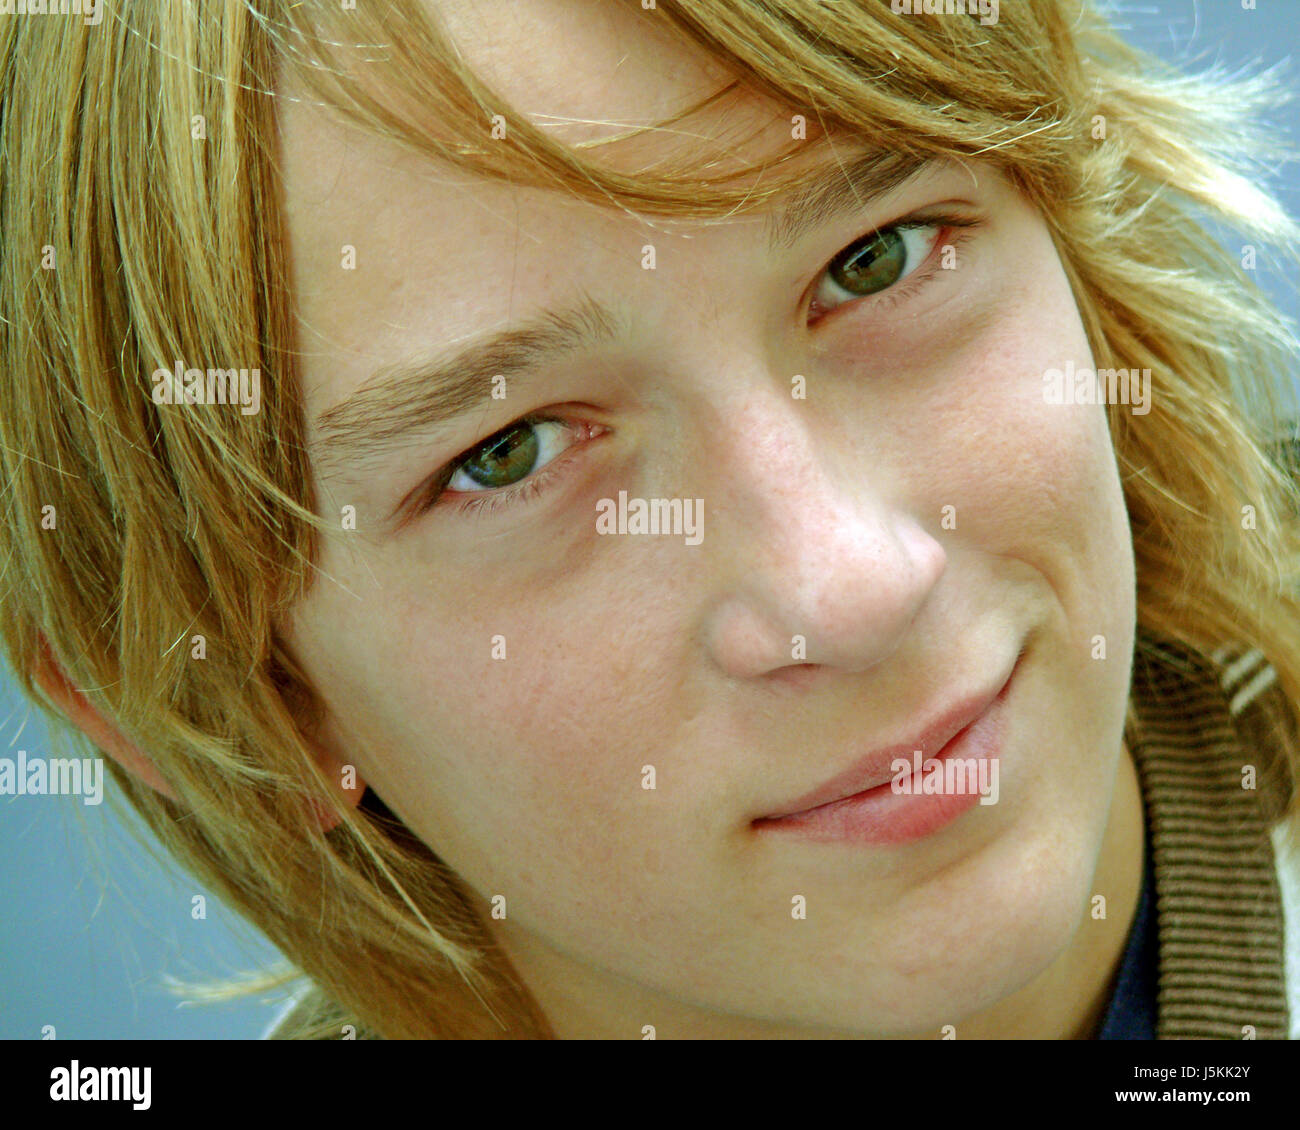 Mâles adolescents face portrait masculin d'organe de l'œil la puberté adolescente coiffure bw Banque D'Images